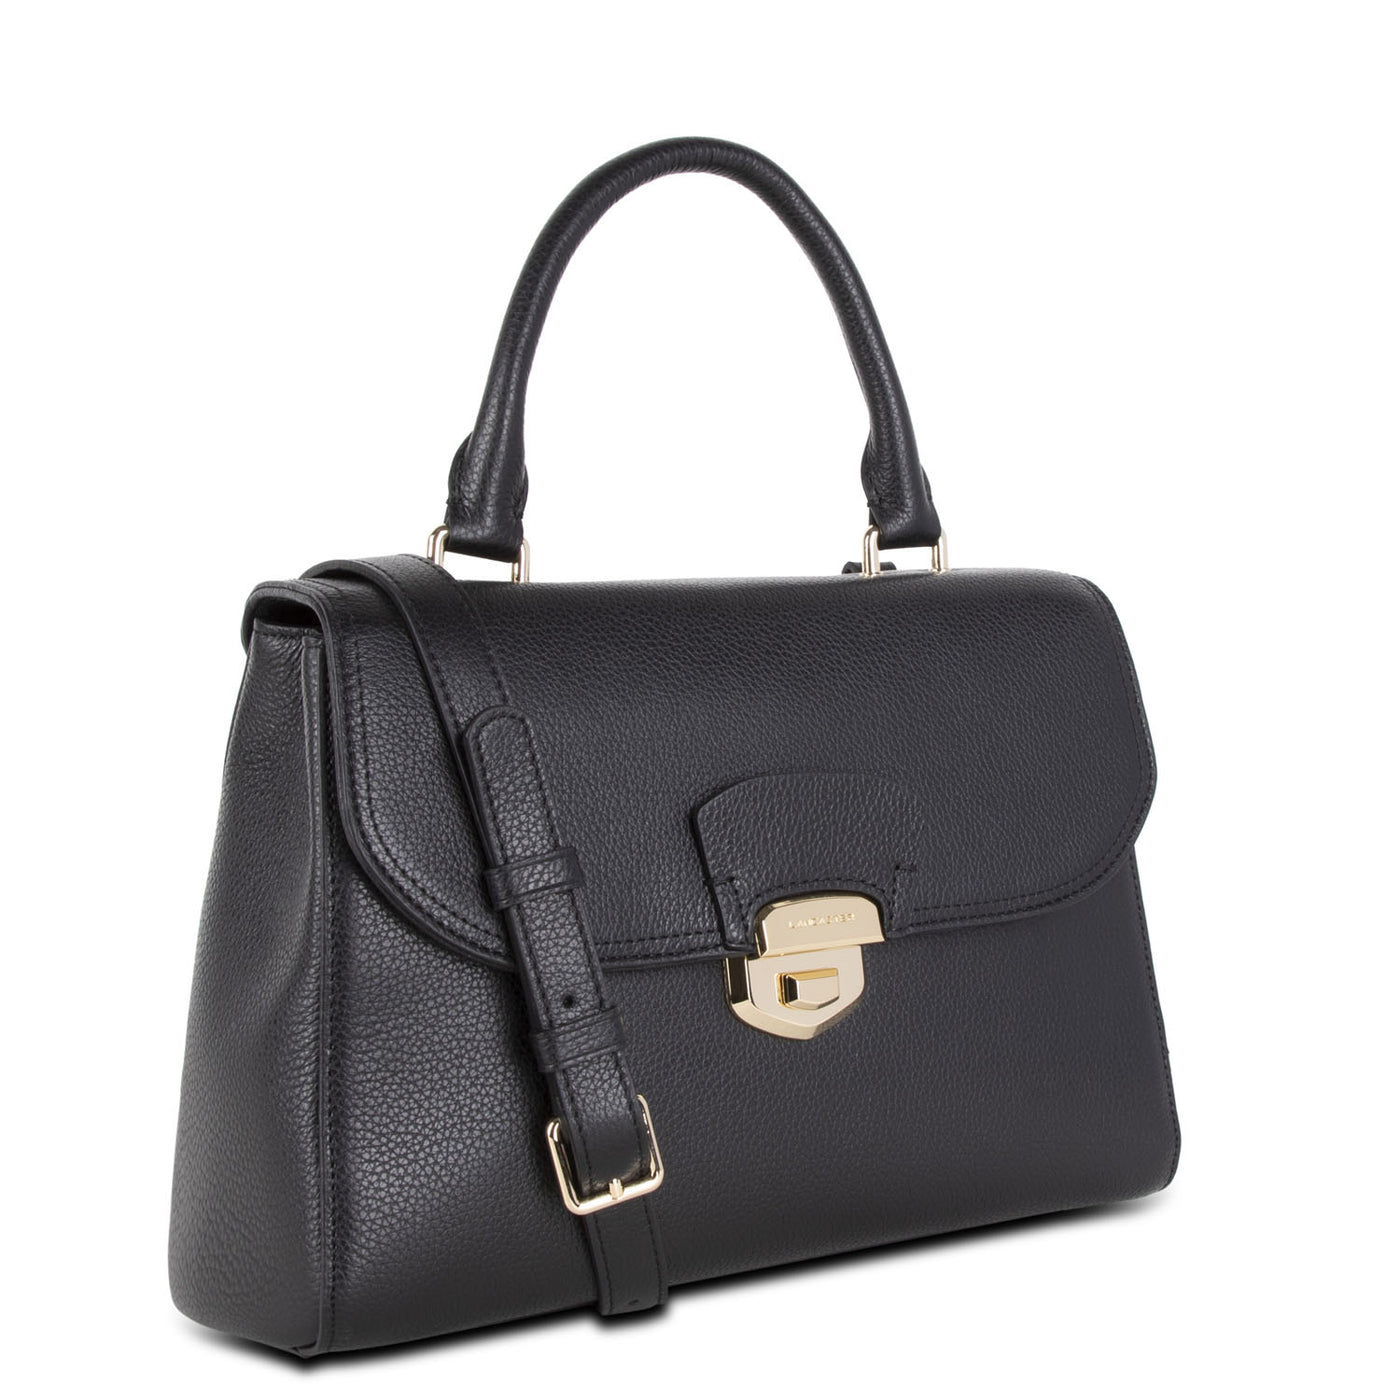 handbag - foulonne milano #couleur_noir